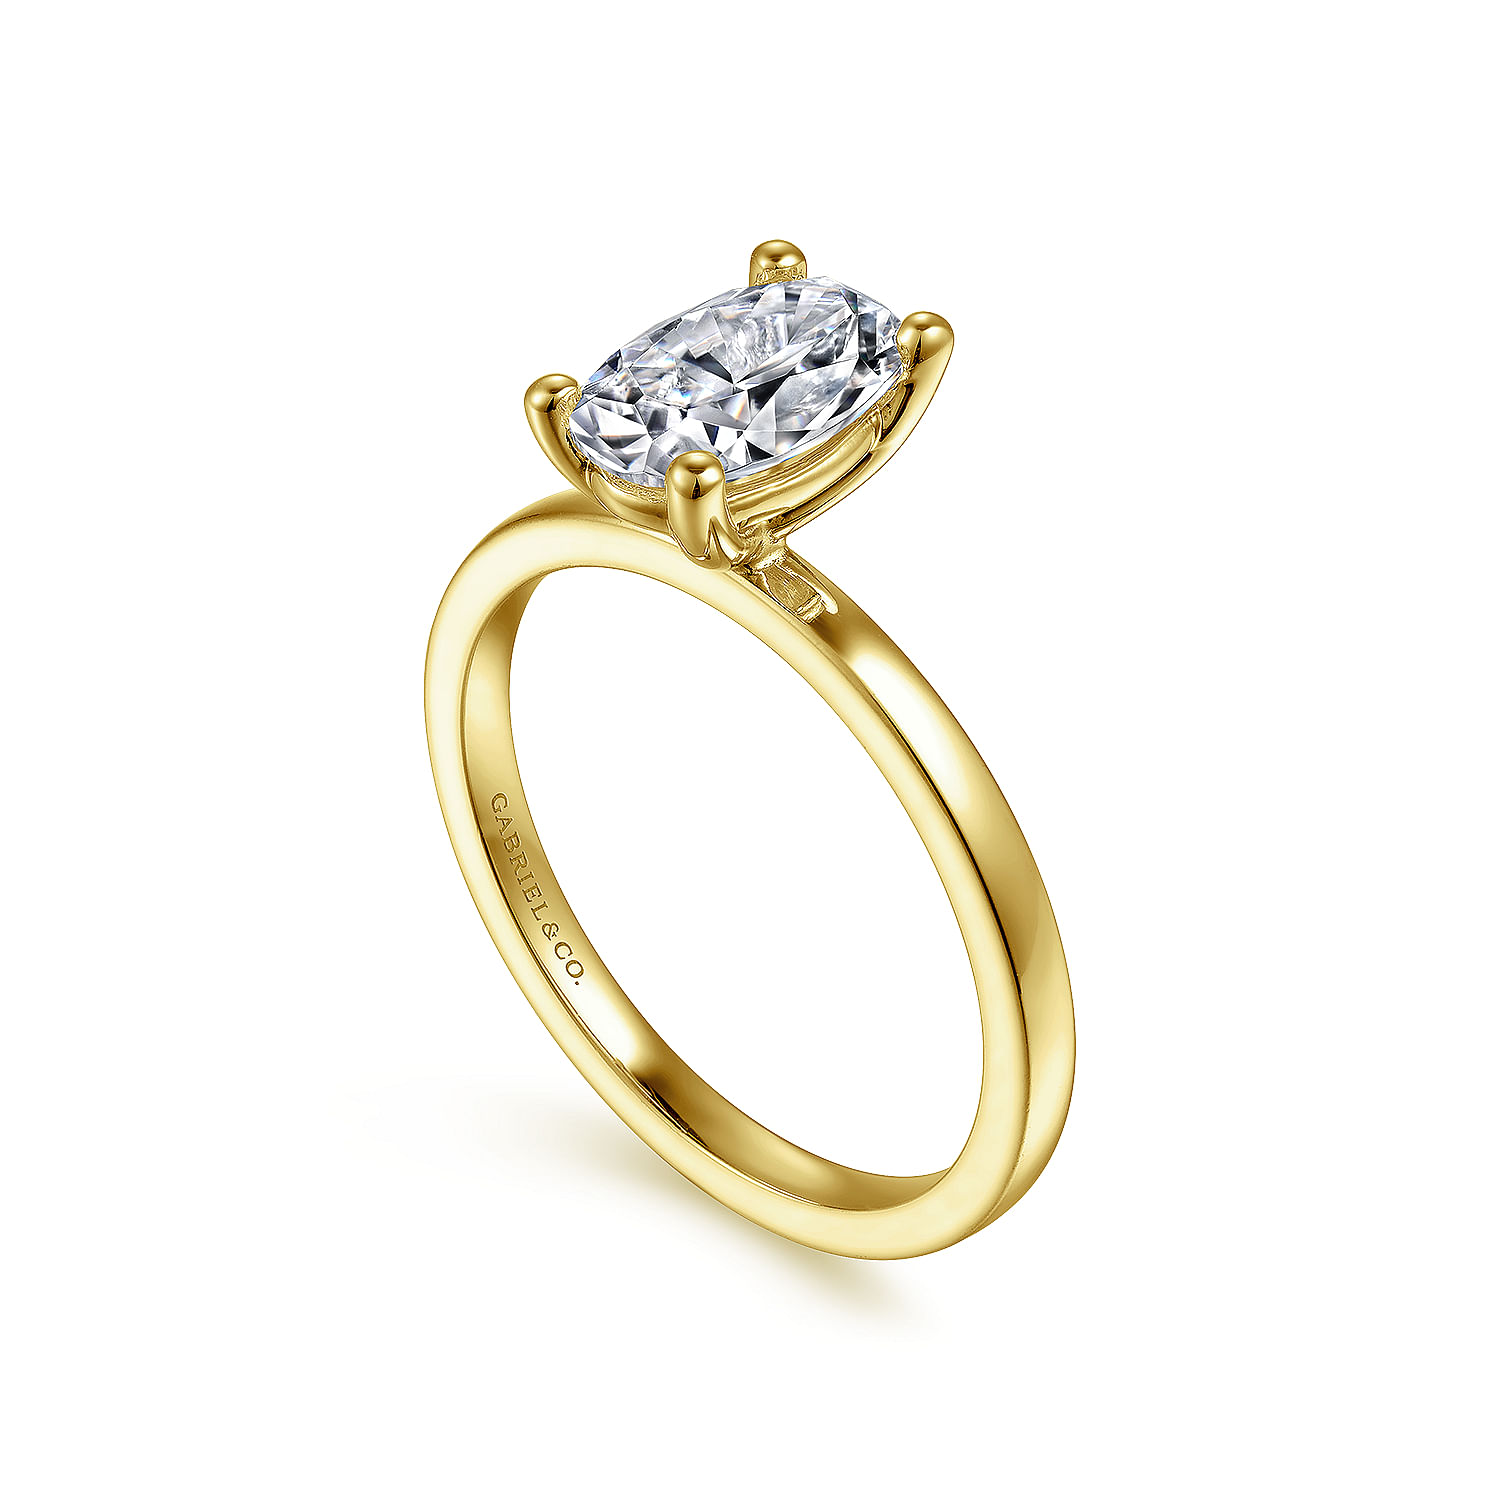 Paula - 14K Yellow Gold Oval Diamond Engagement Ring - Shot 3